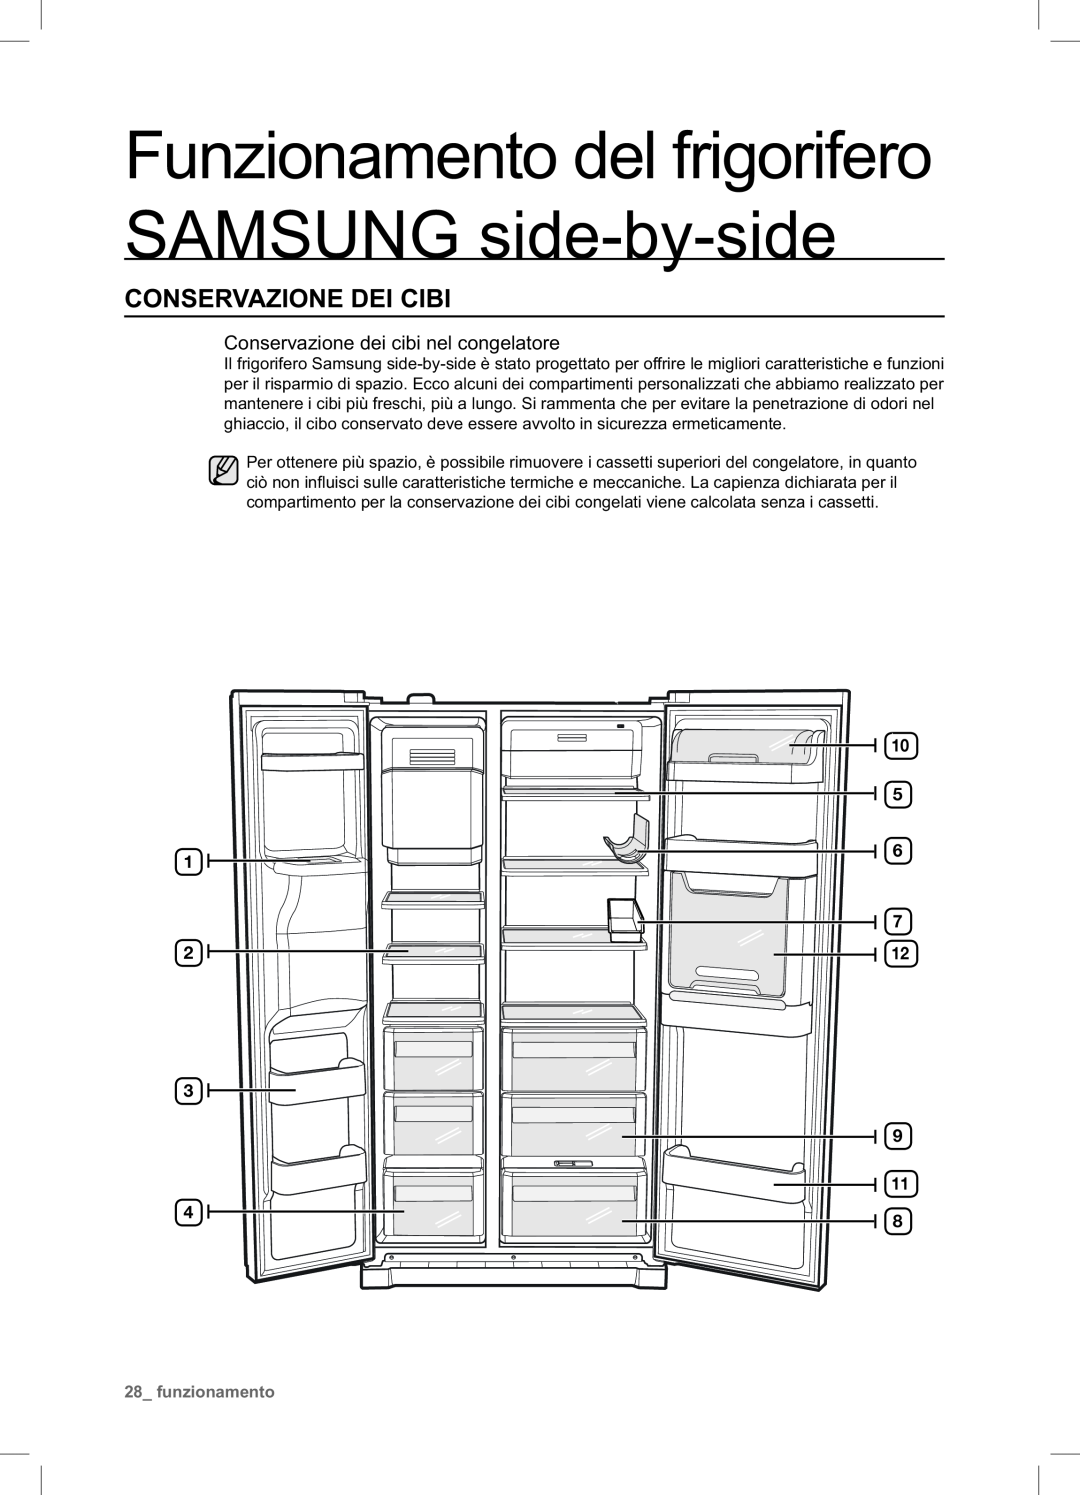 Samsung RSA1NTPE1/XES manual Conservazione Dei Cibi, Funzionamento del frigorifero SAMSUNG side-by-side, funzionamento 